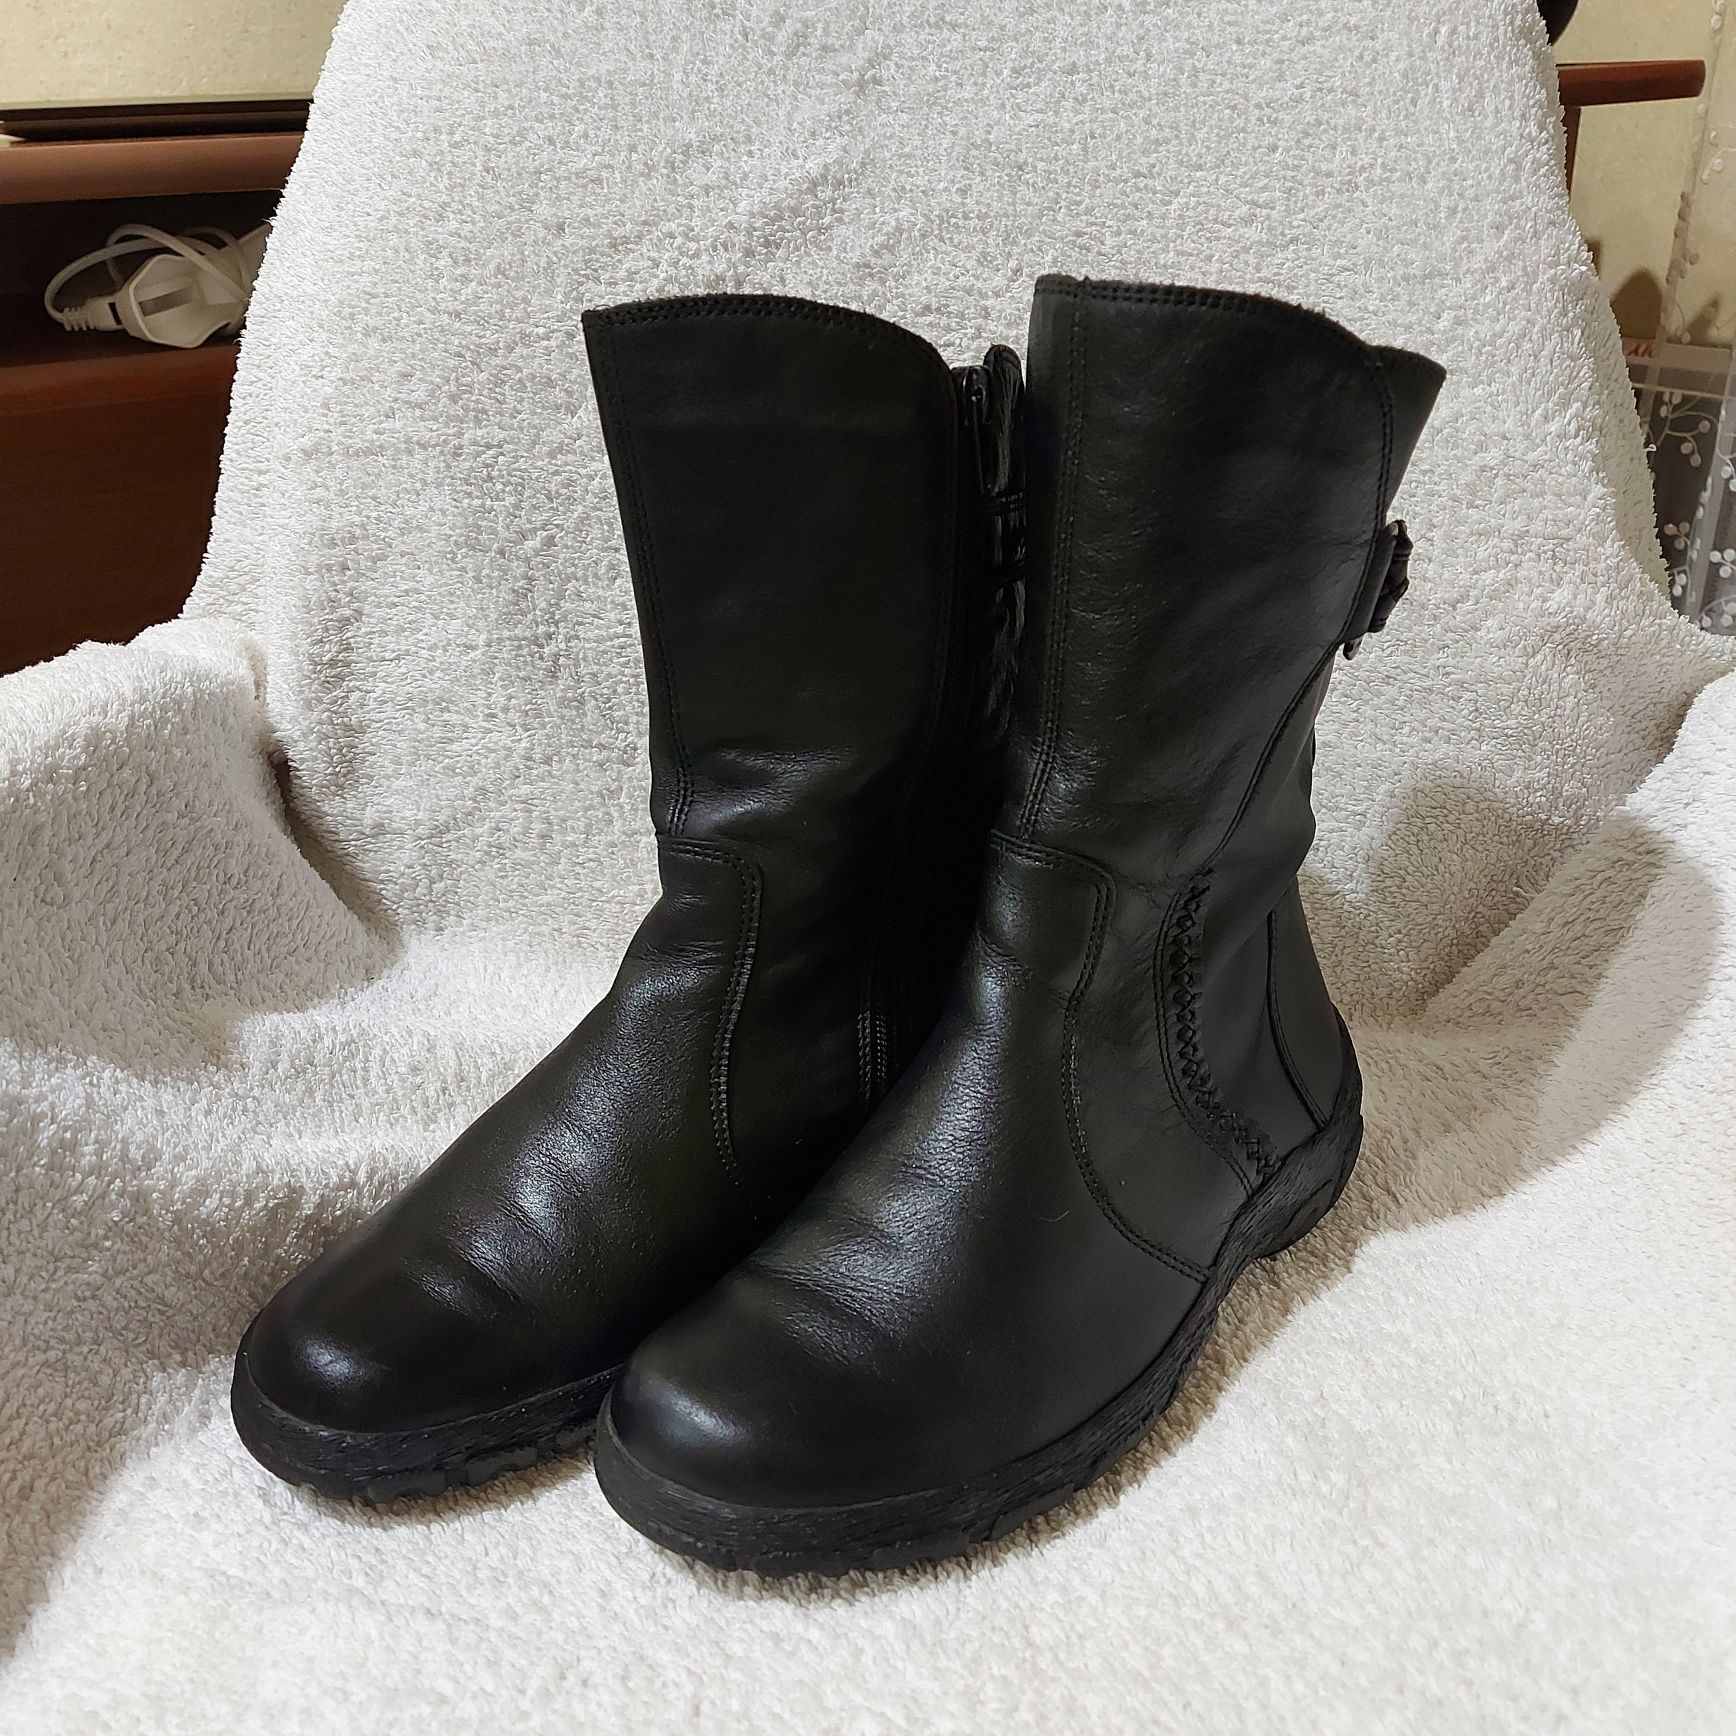 Сапоги ботинки gabor jolly's 37p черные кожа зима